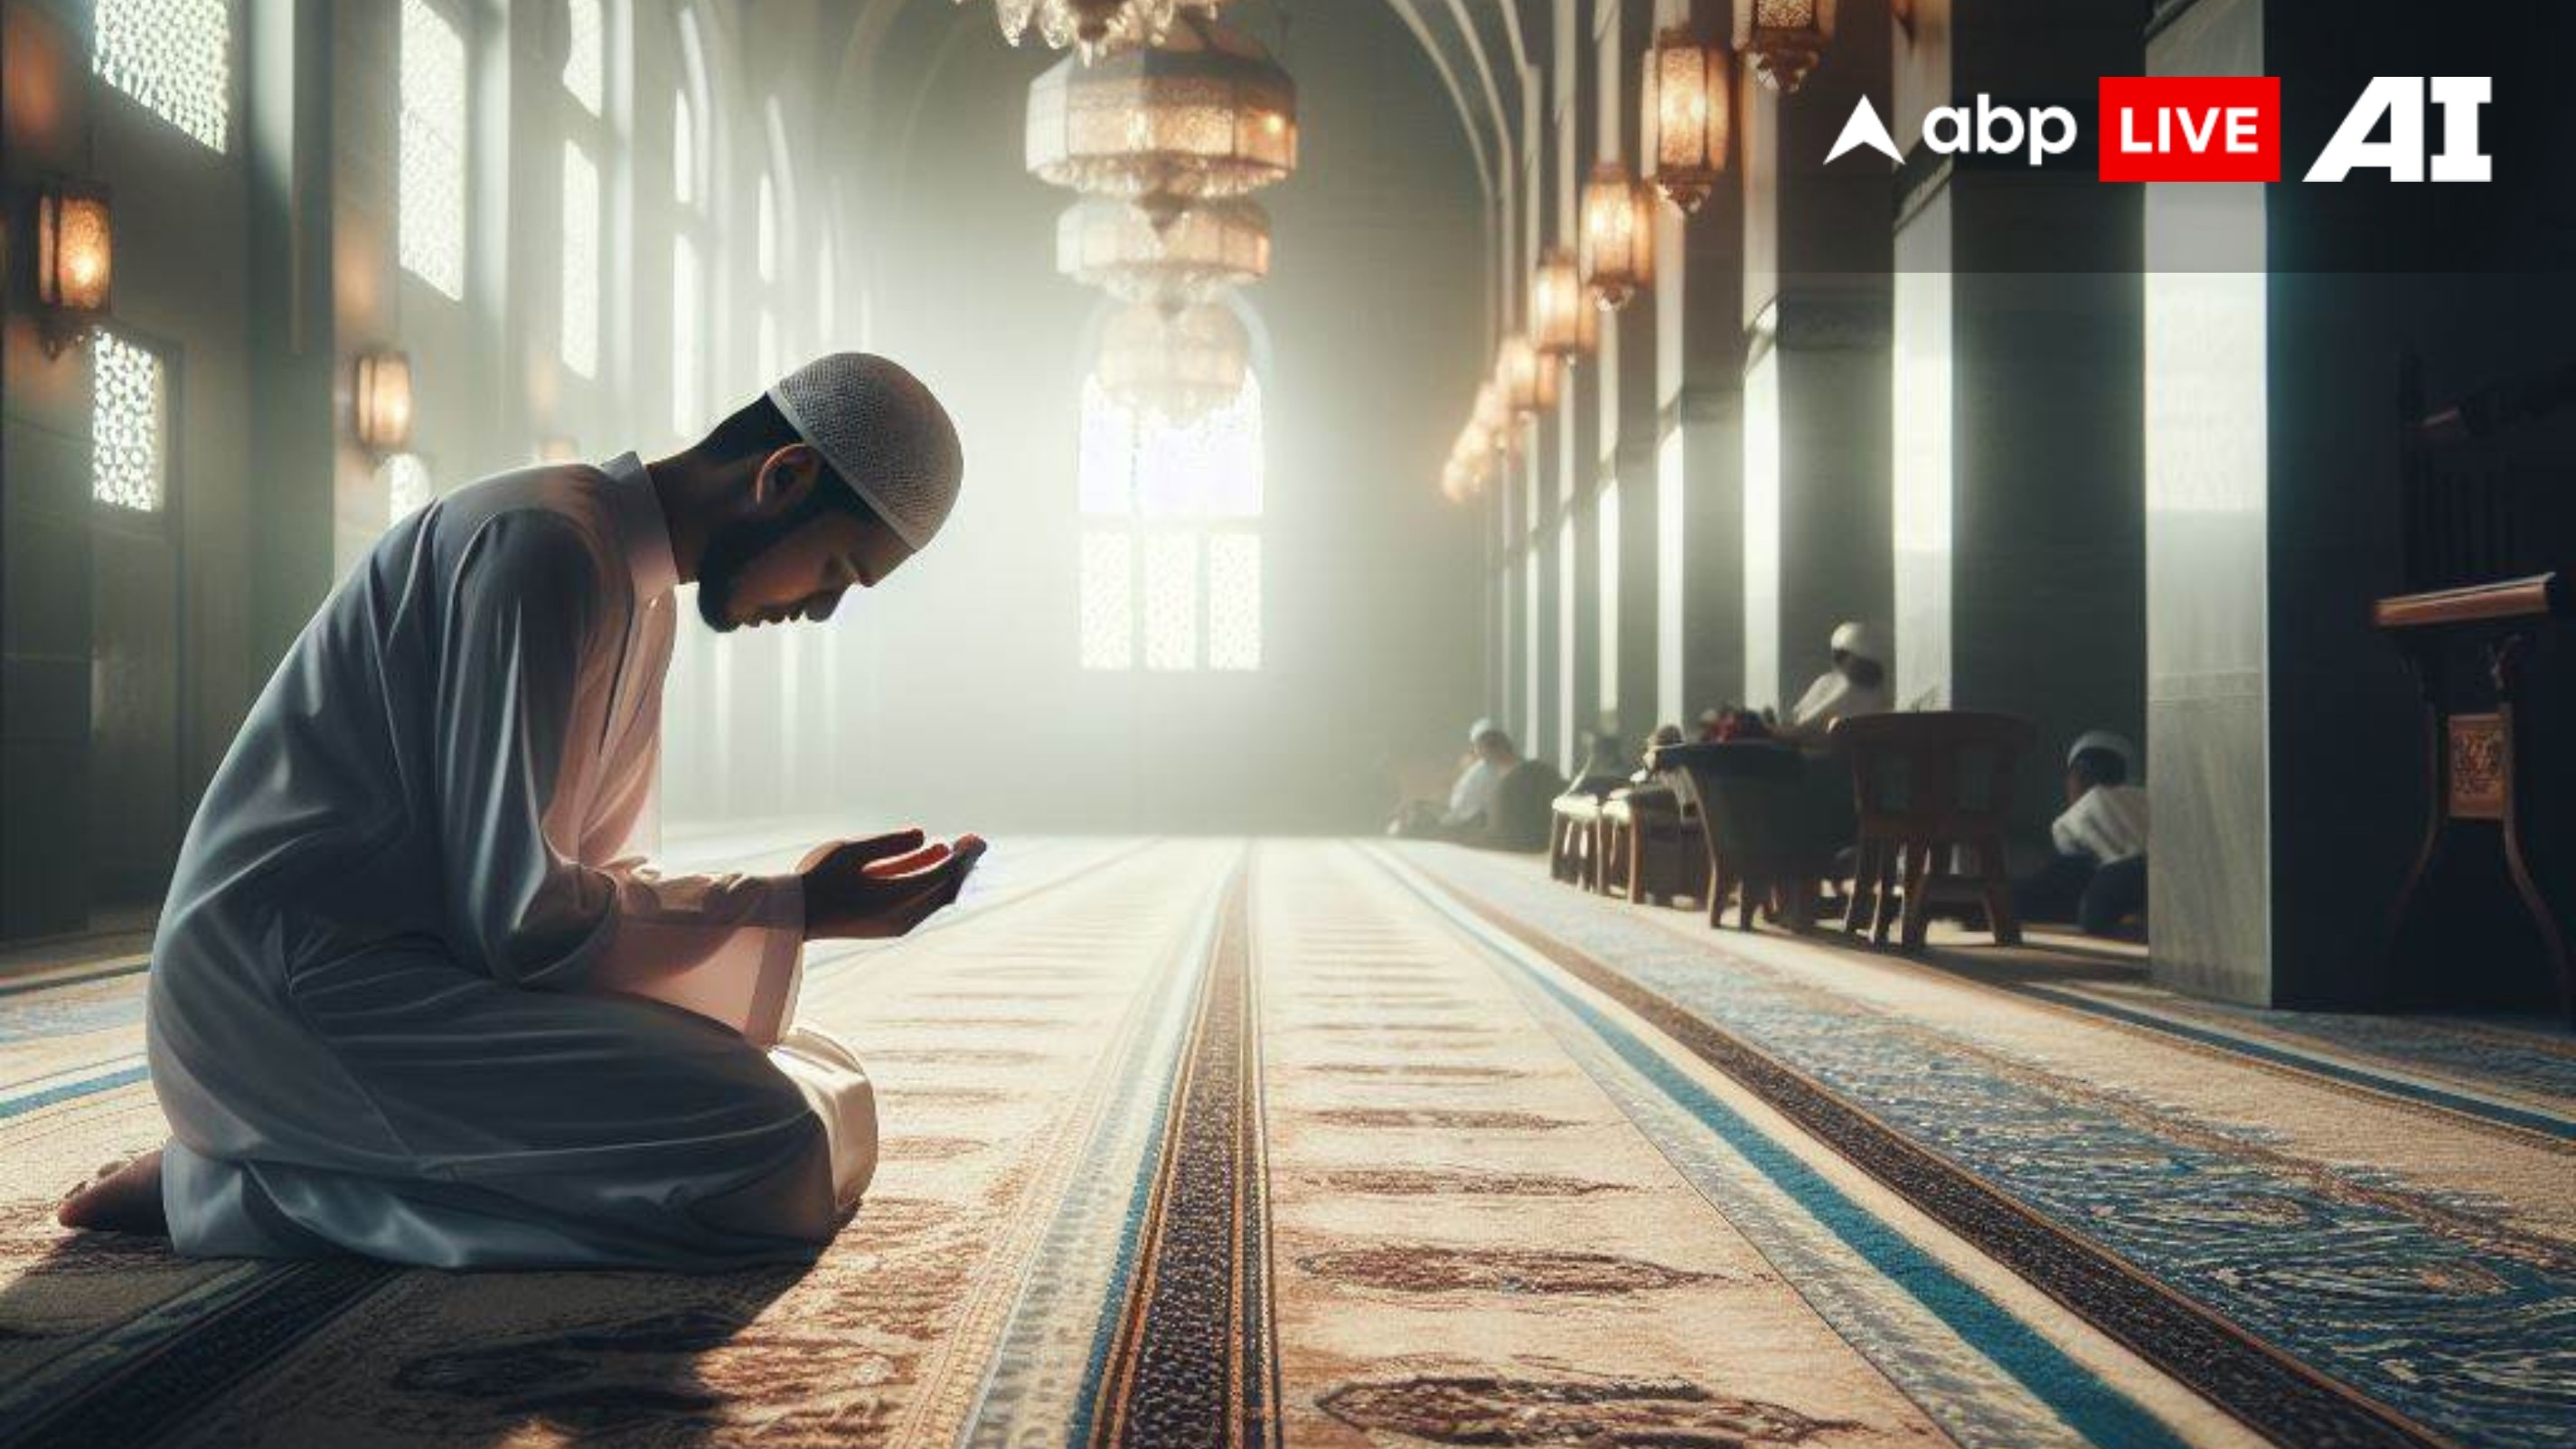 Itikaf: रमजान के तीसरे अशरे में 'एतिकाफ' पर बैठने की क्या है फजीलत? दुनिया से अलग होकर खुदा से लौ लगाता है मुसलमान